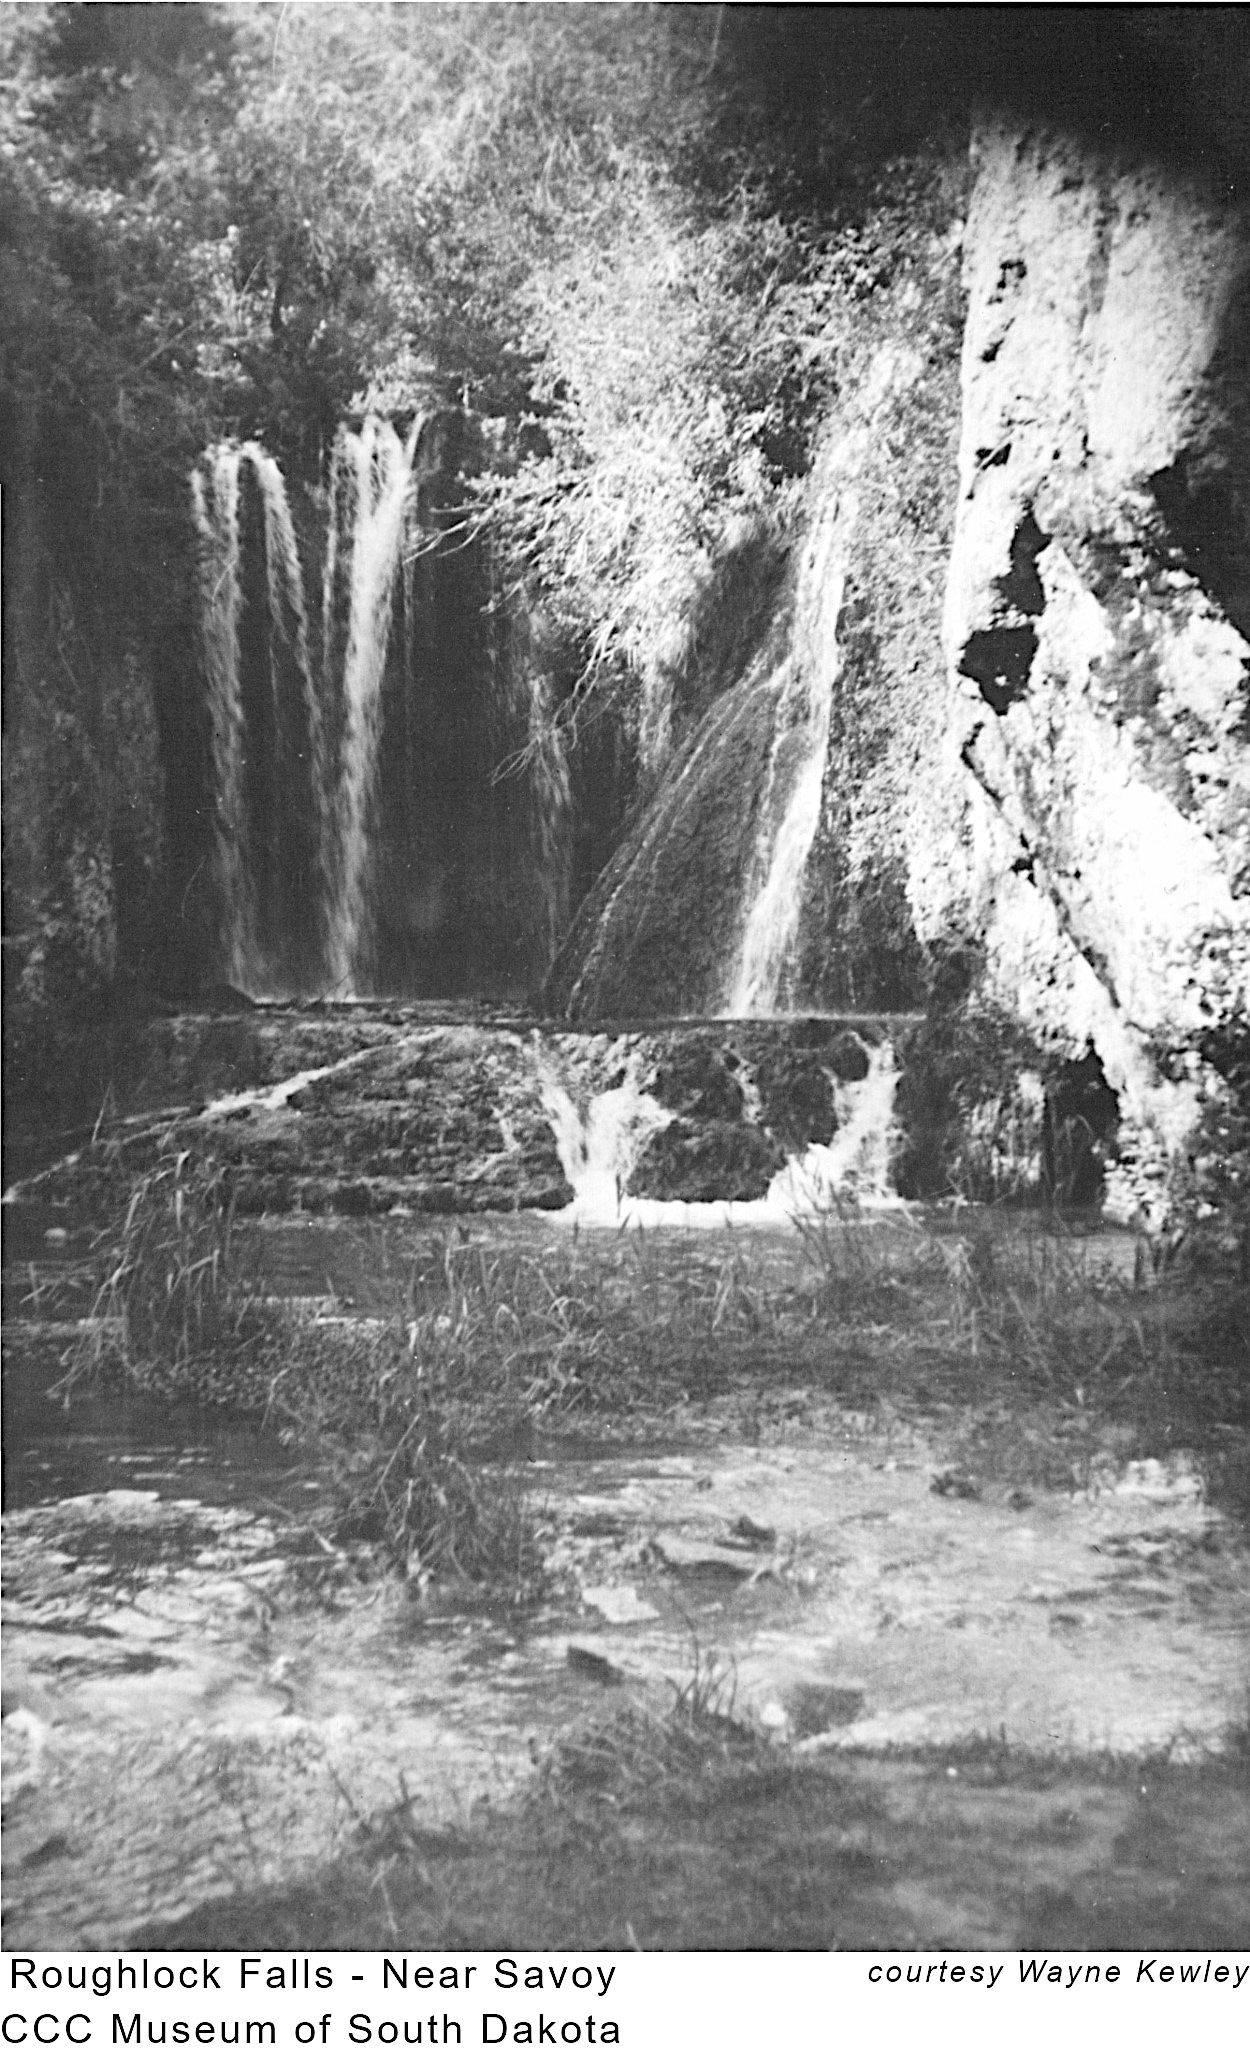 Roughlock Falls at Savoy